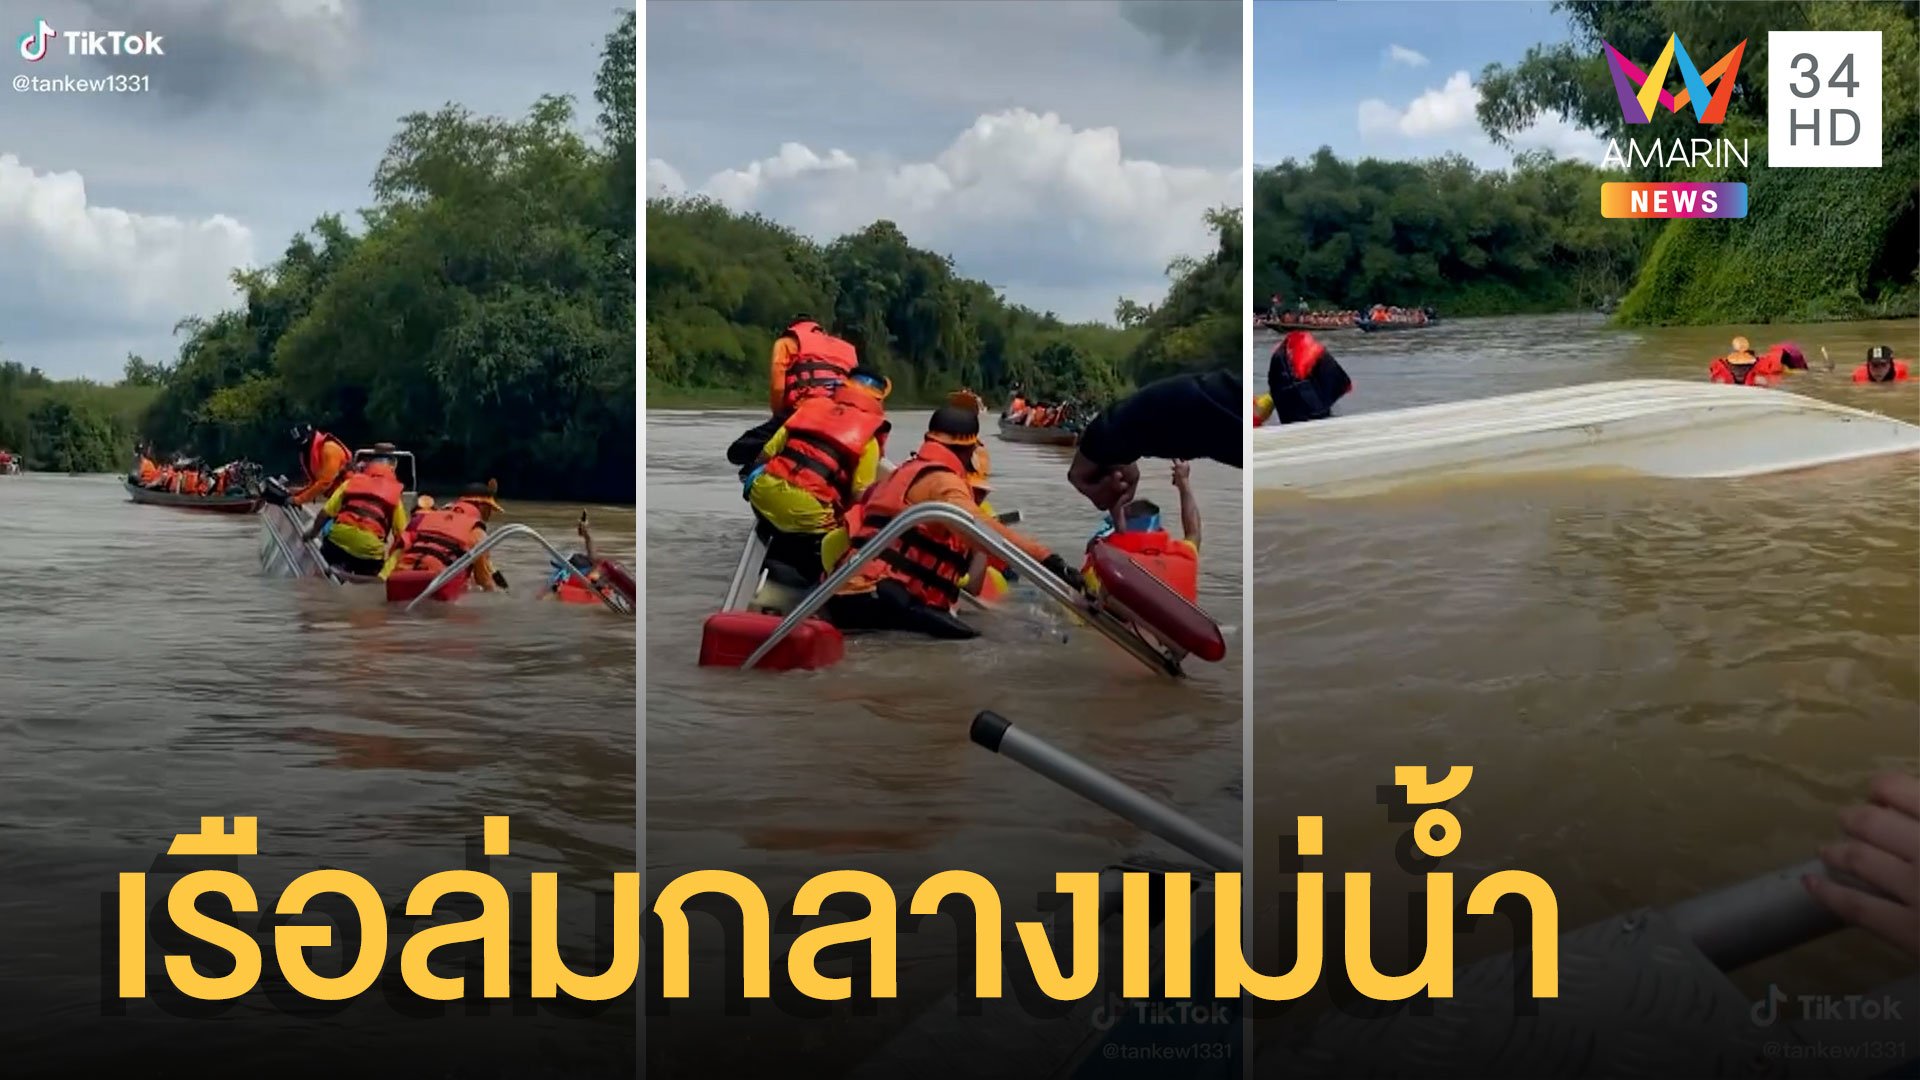 สุดระทึก! เรือถวายเทียนล่มกลางแม่น้ำ รอดเพราะเสื้อชูชีพ | ข่าวอรุณอมรินทร์ | 4 ก.ค. 65 | AMARIN TVHD34